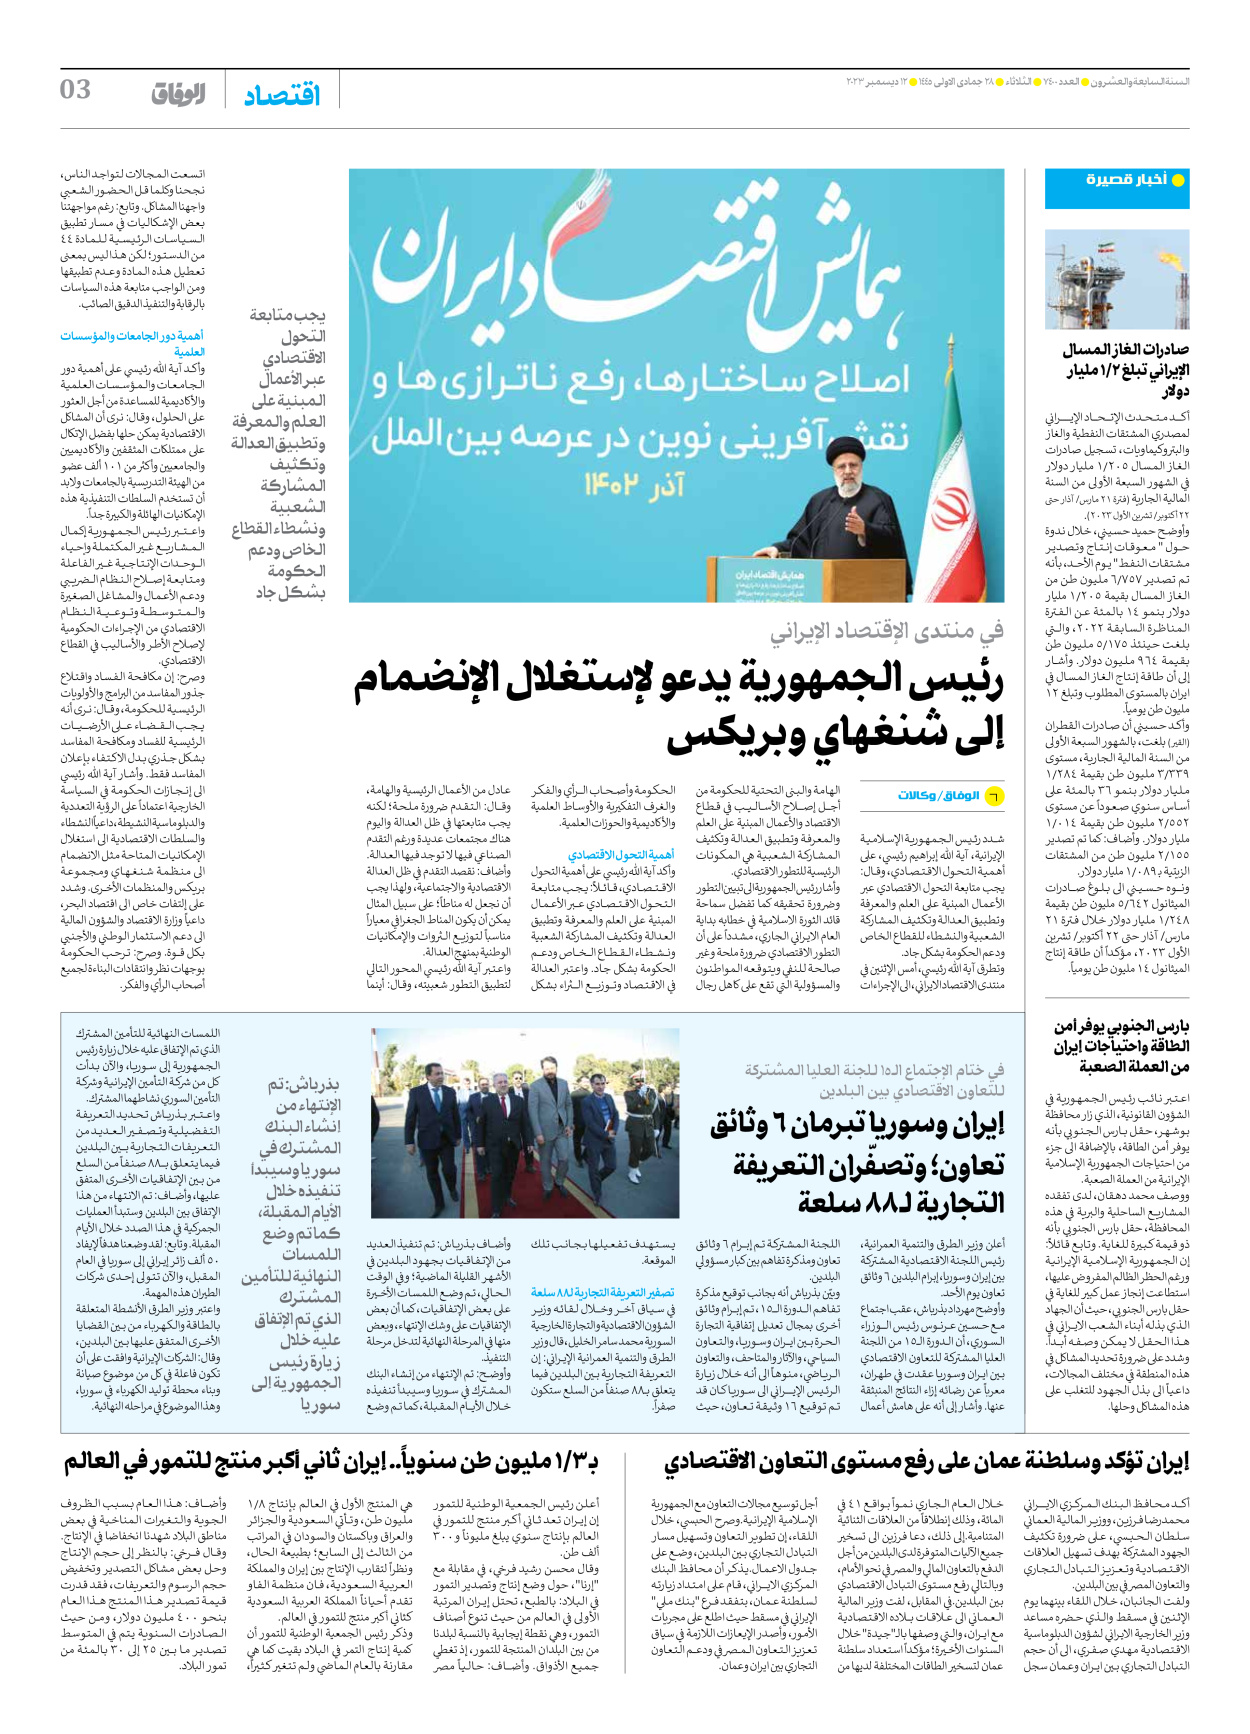 صحیفة ایران الدولیة الوفاق - العدد سبعة آلاف وأربعمائة - ١٢ ديسمبر ٢٠٢٣ - الصفحة ۳